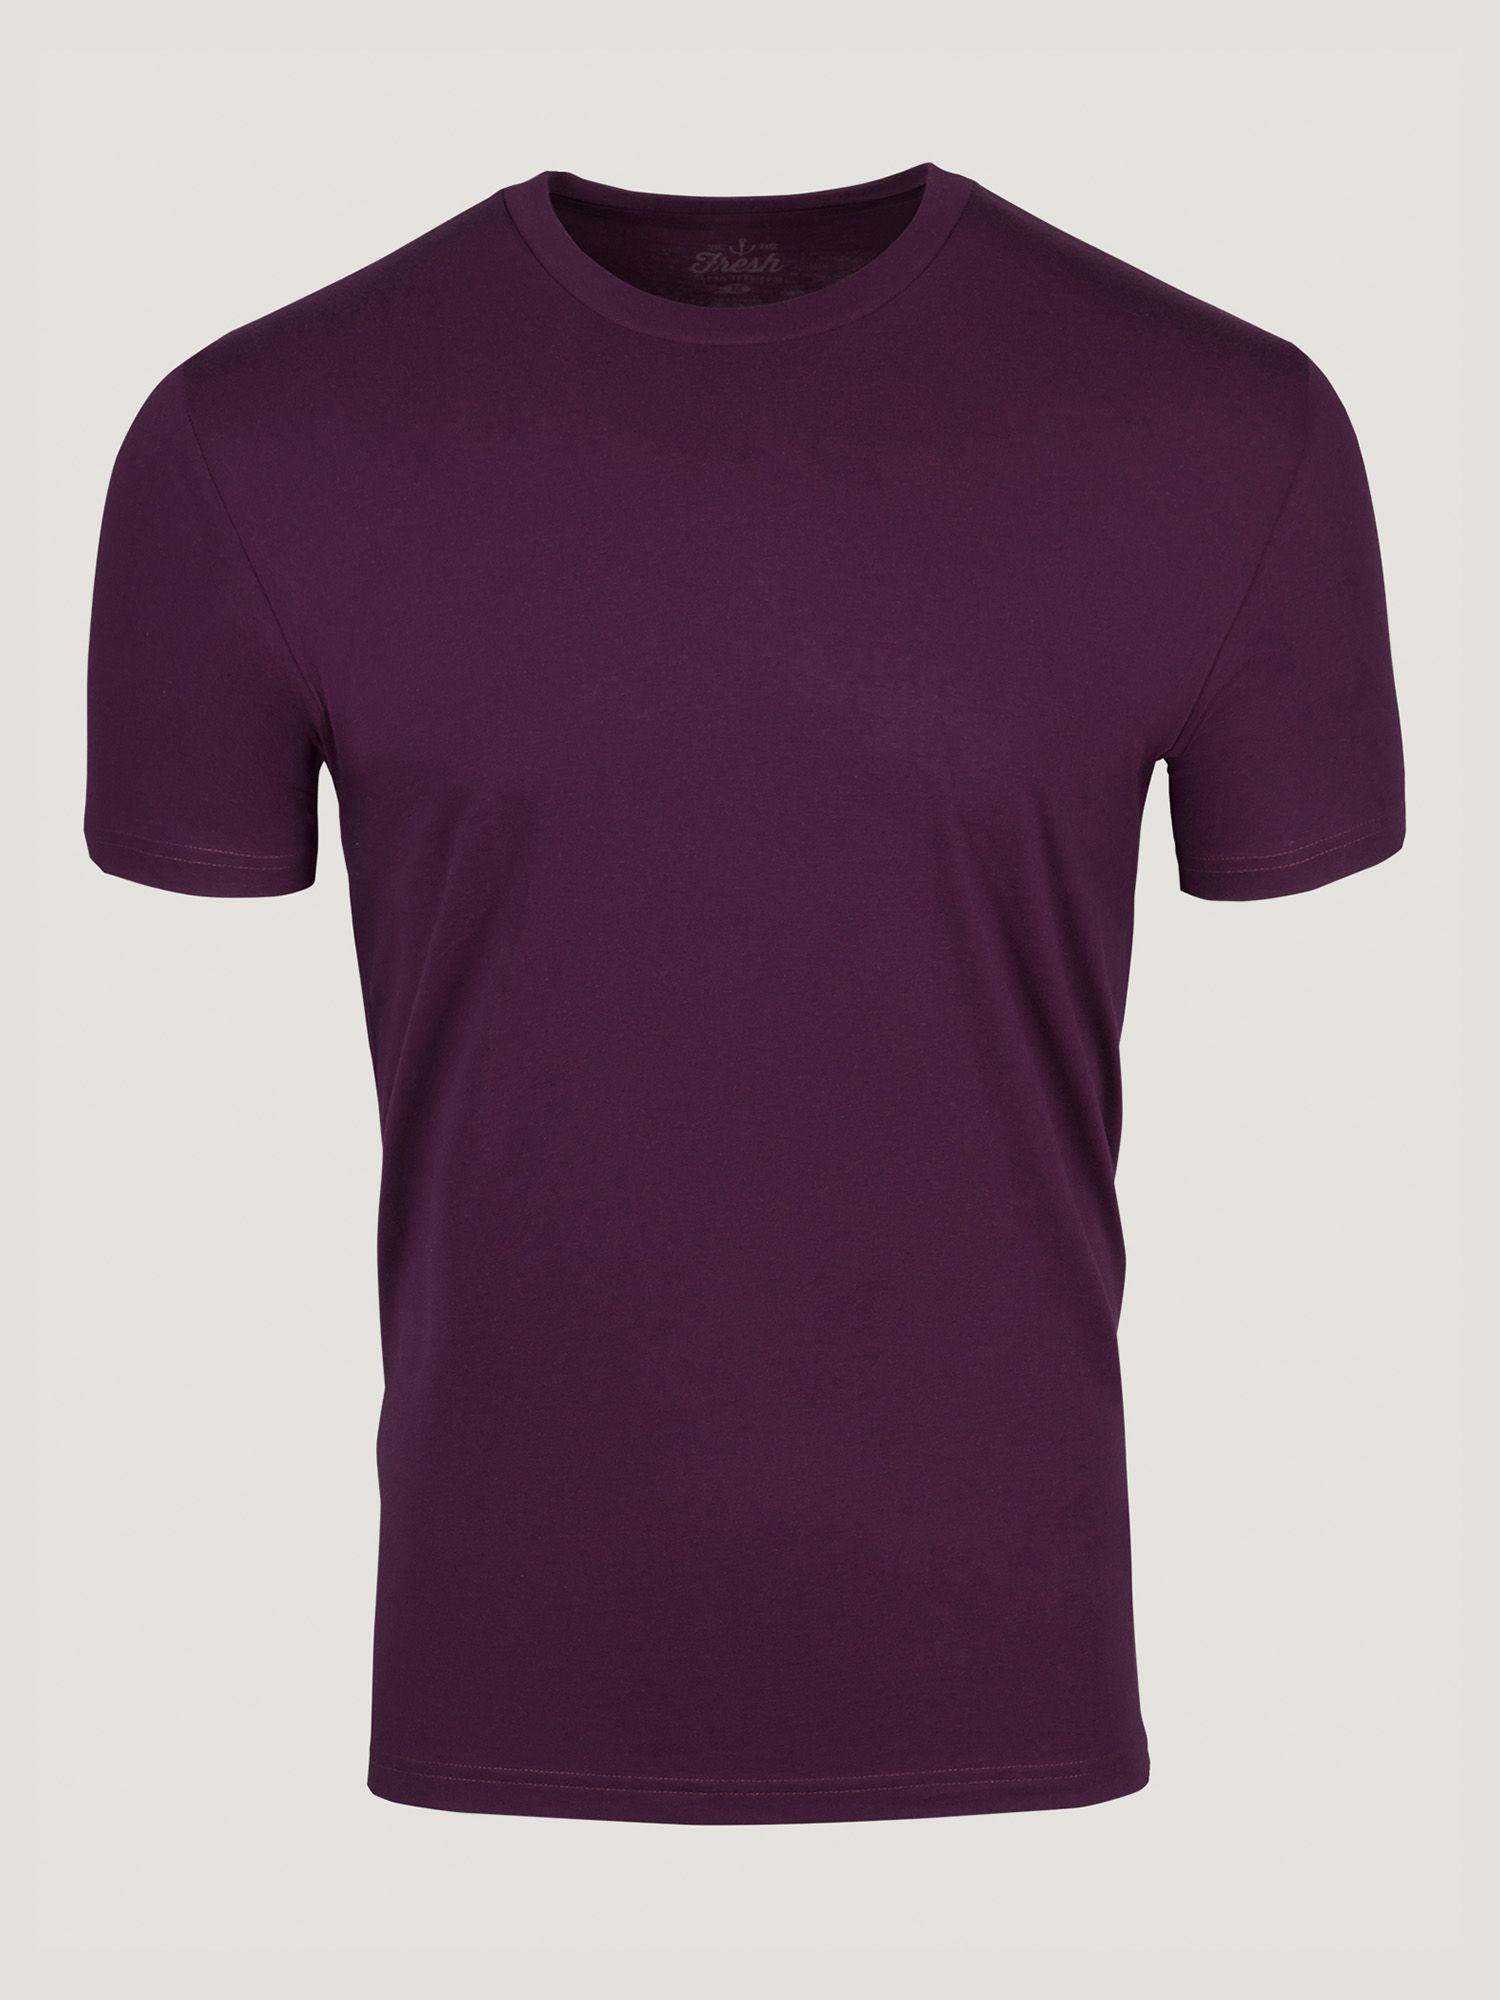 purple color t shirt